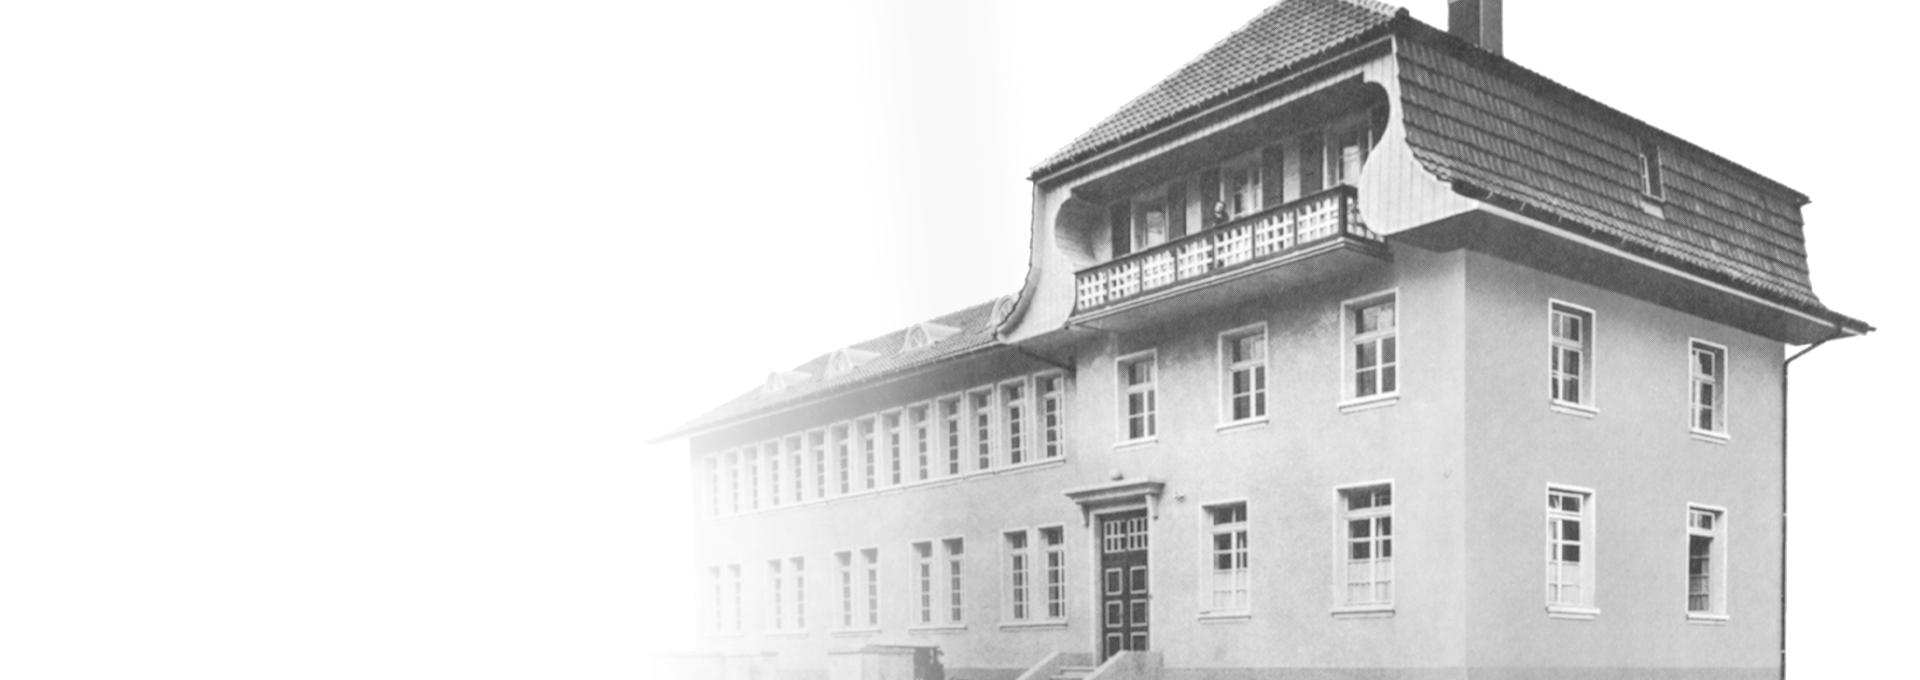 Gammalt svartvitt foto av Bernafons första fabrik i Flamatt, nära Bern, Schweiz, 1925